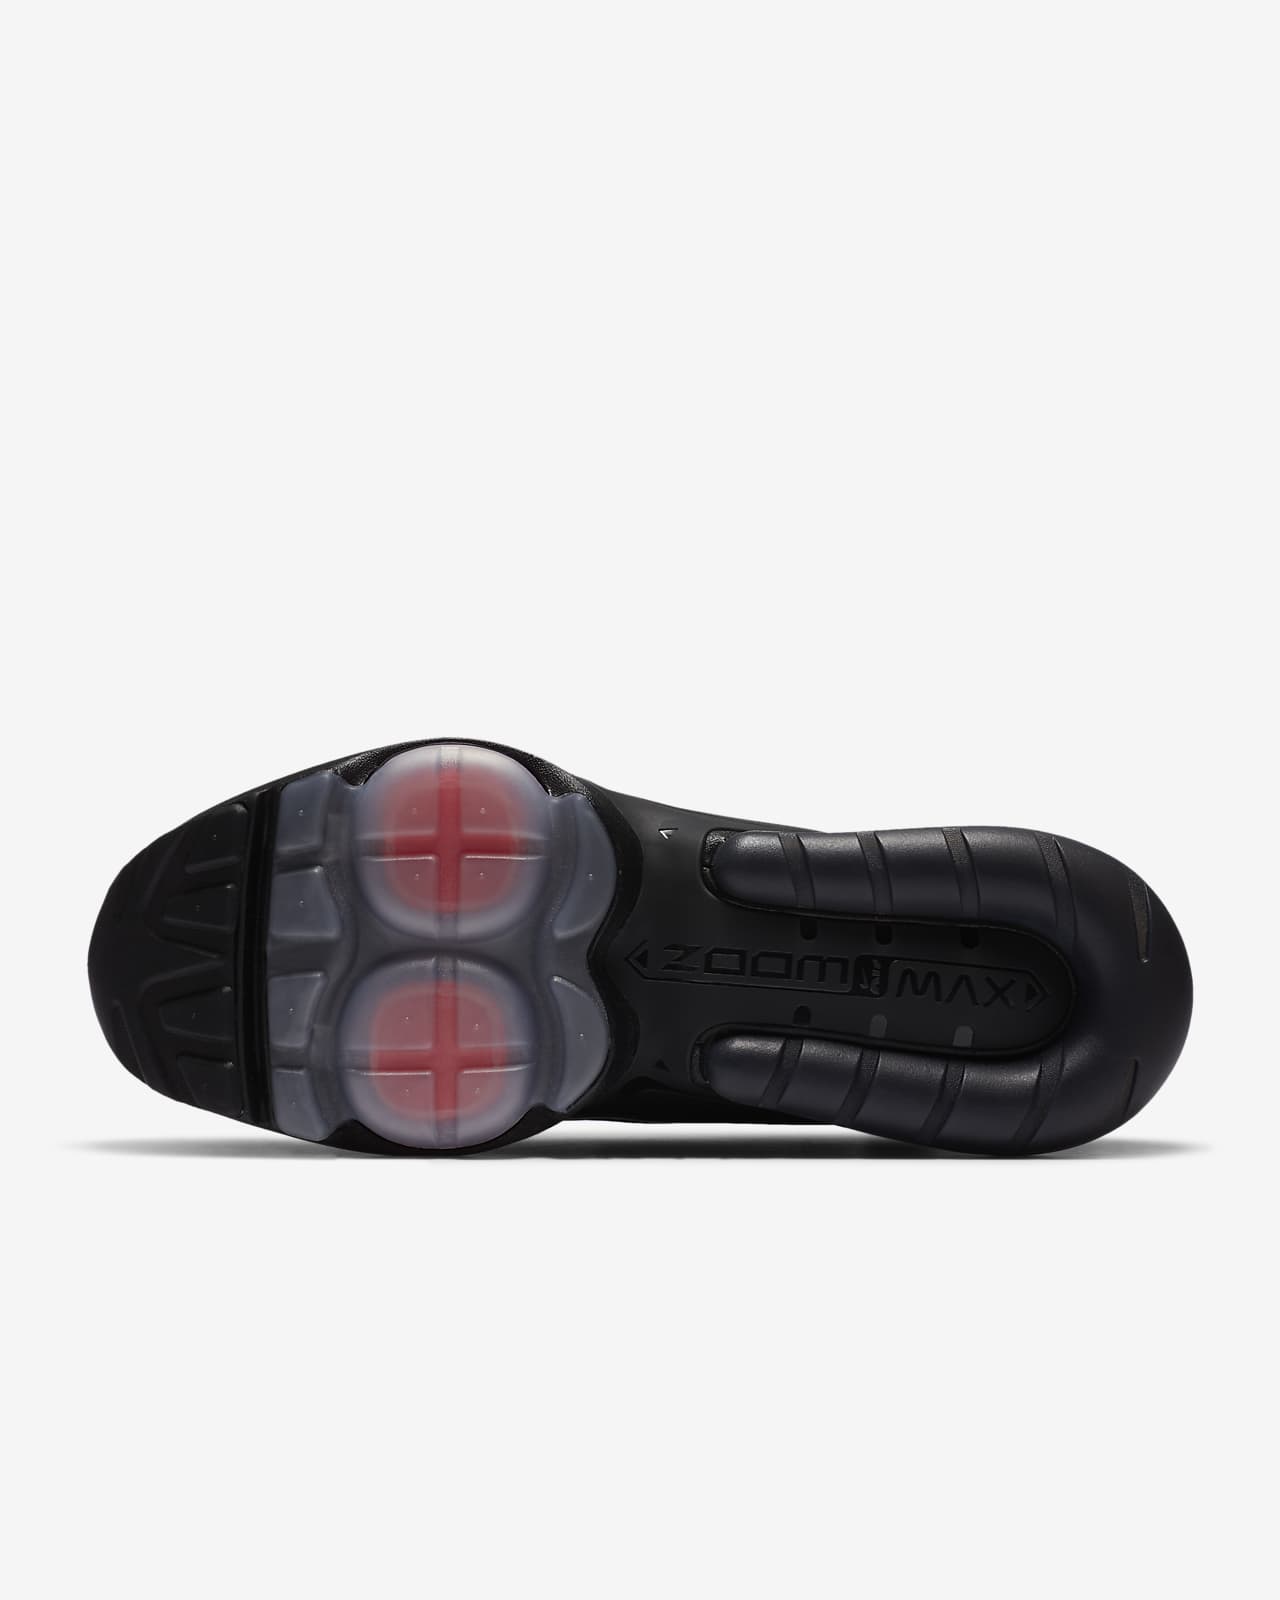 Nike Air Max ZM950 Men's Shoe